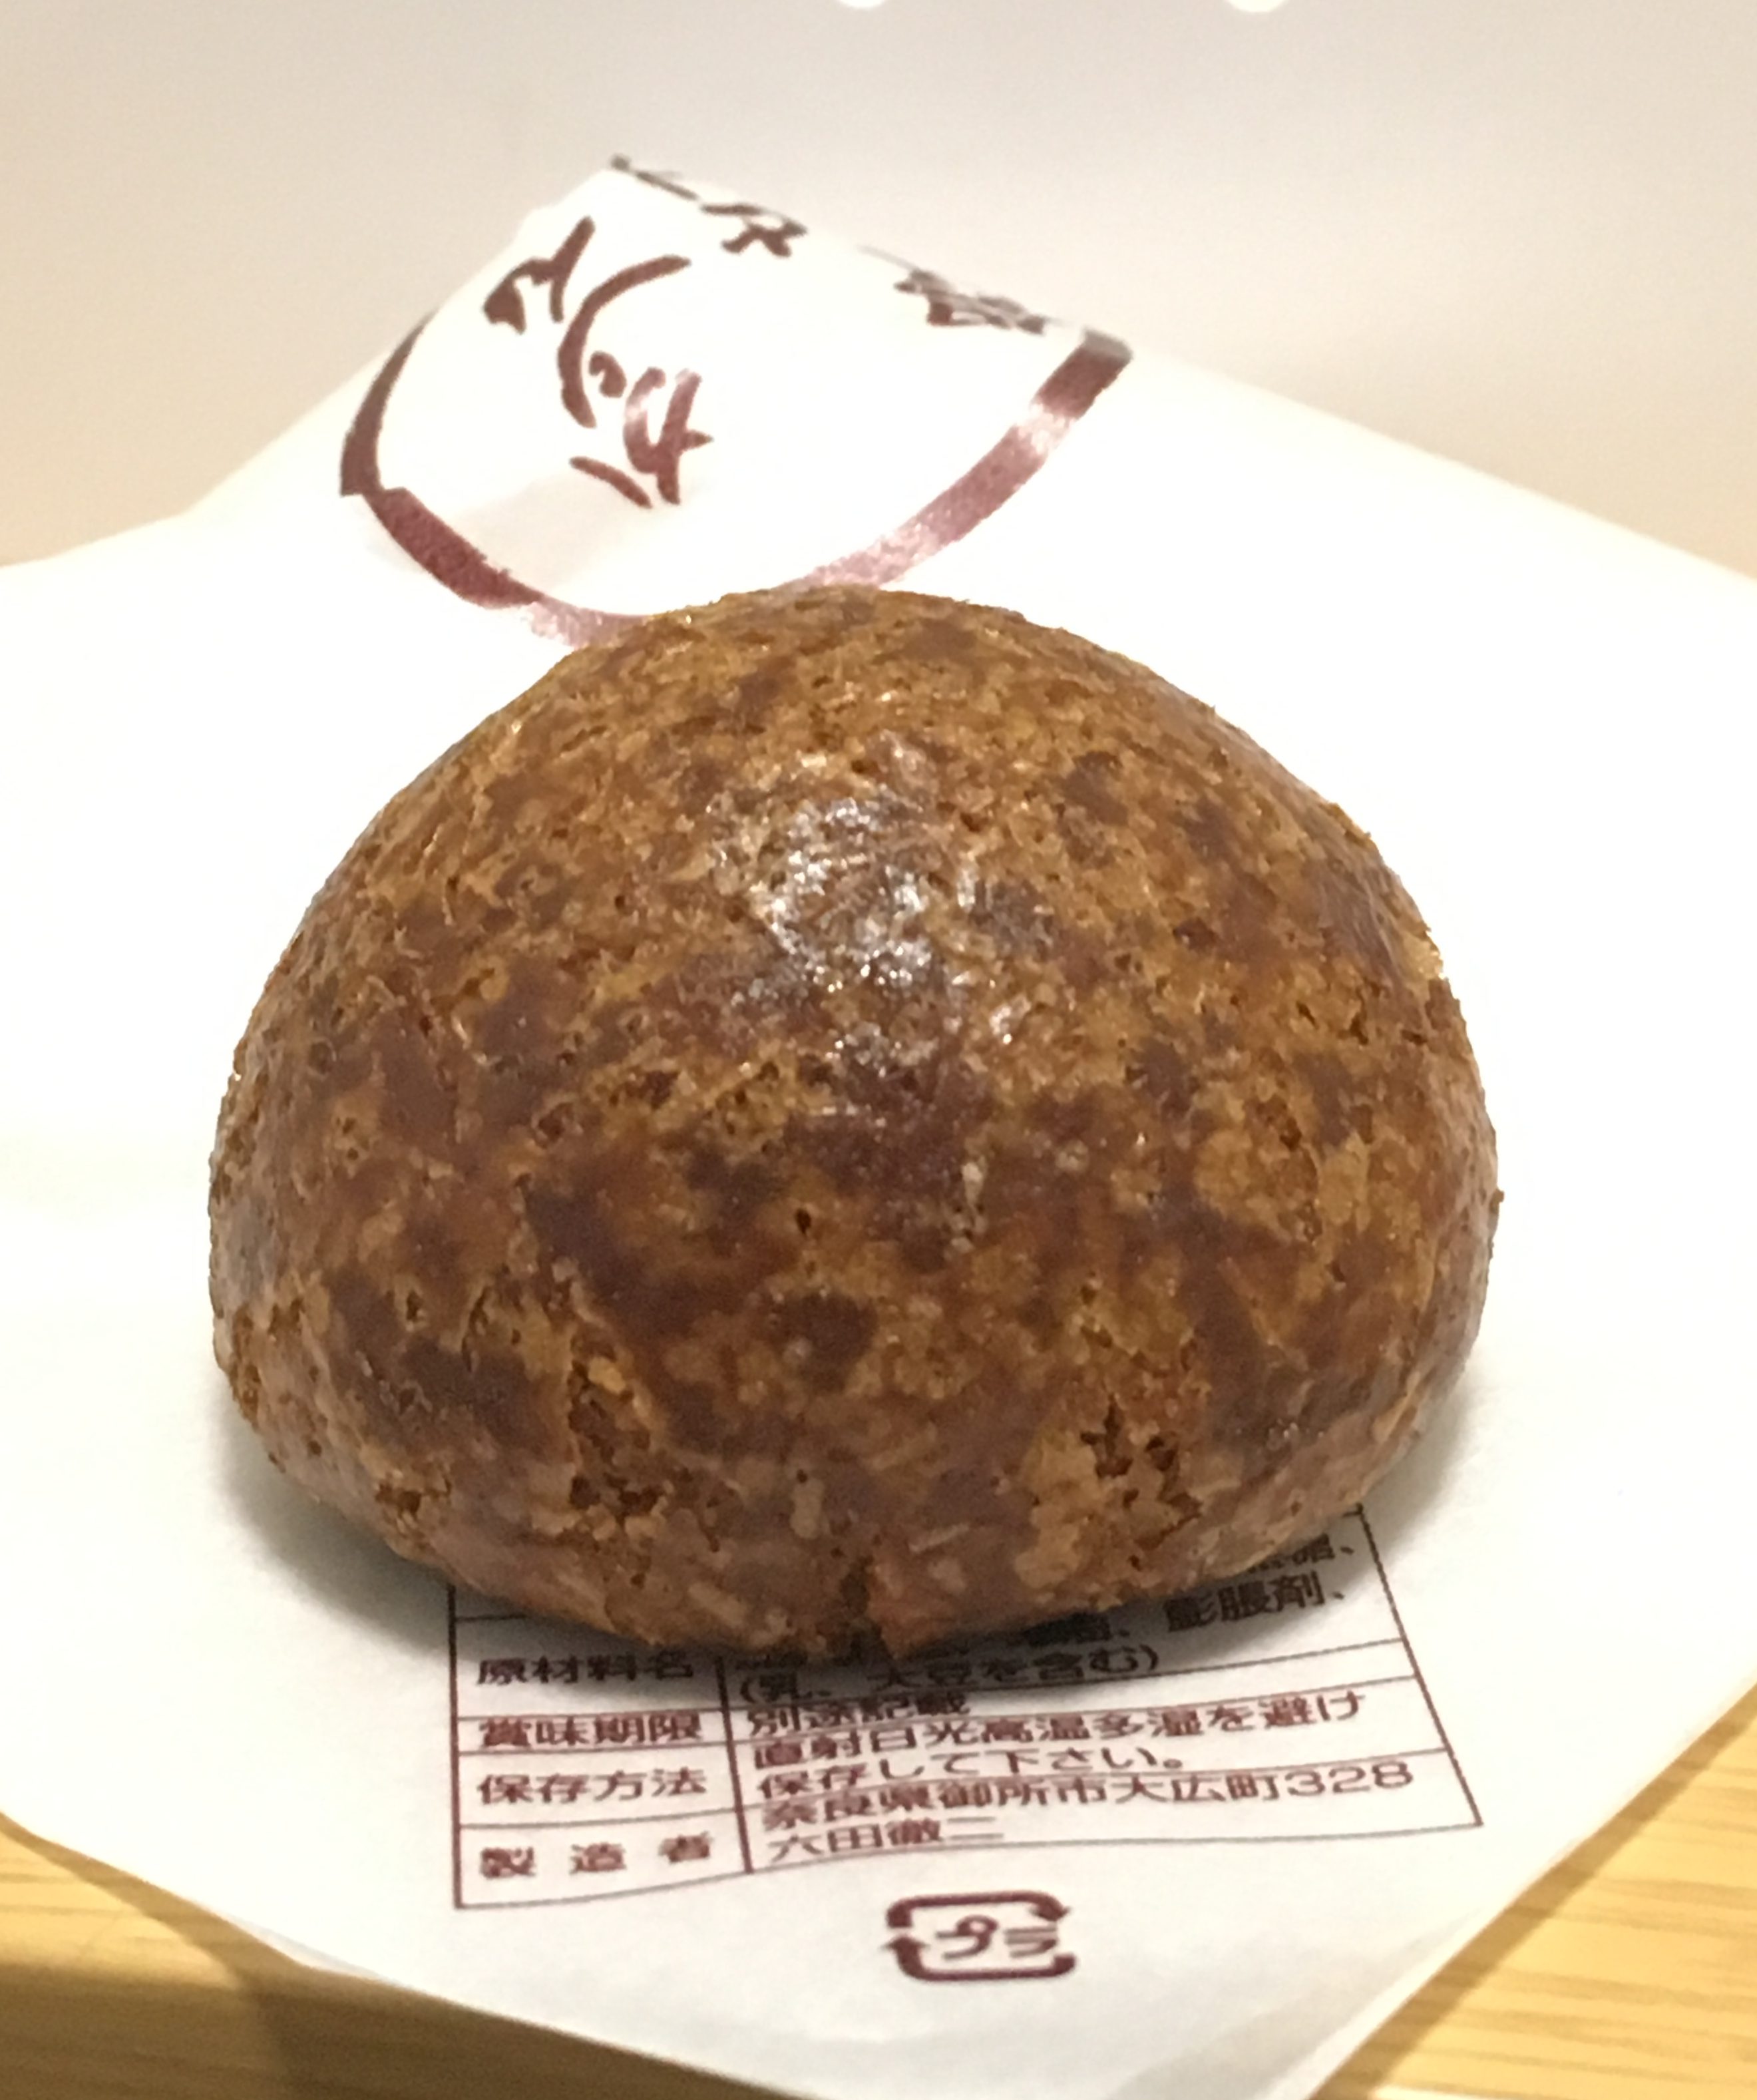 奈良 本気でうまい 奈良県御所市で極上のかりんとう饅頭を発見 モロデザイン